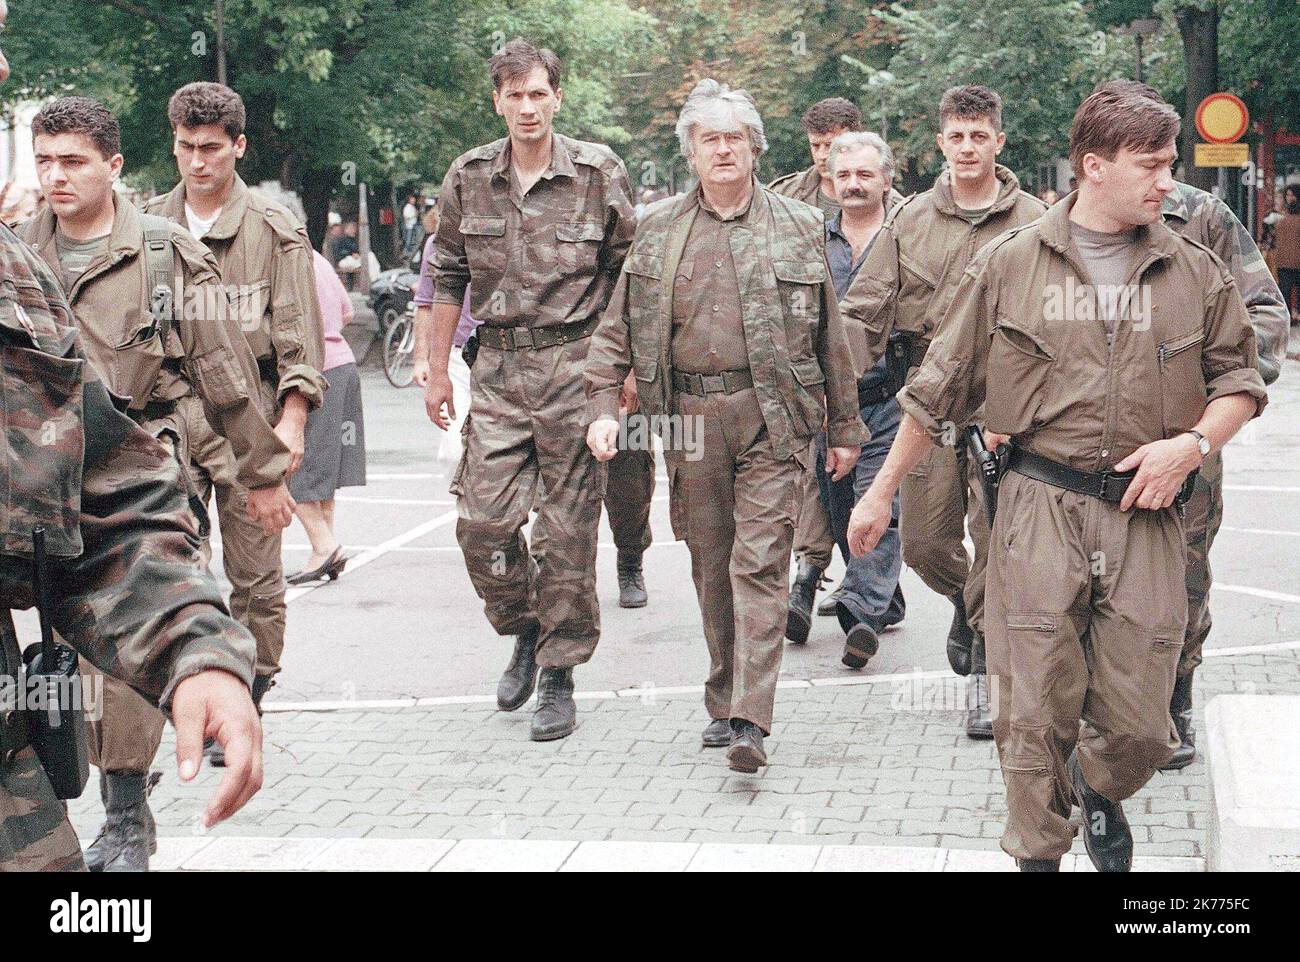 BANJA LUKA REPUBLIK BOSNIEN (EHEMALIGES JUGOSLAWIEN) / 1995 die Archivfotos von Radovan Karadzic, aufgenommen in Banja Luka, 1995, noch mit seinen Leibwächtern, werden vom Gericht in Den Haag beantragt. Es wird gesagt, dass es während des letzten Prozesses der Verhaftung einige Wunden von Seiten seiner Leibwächter gab. Stockfoto